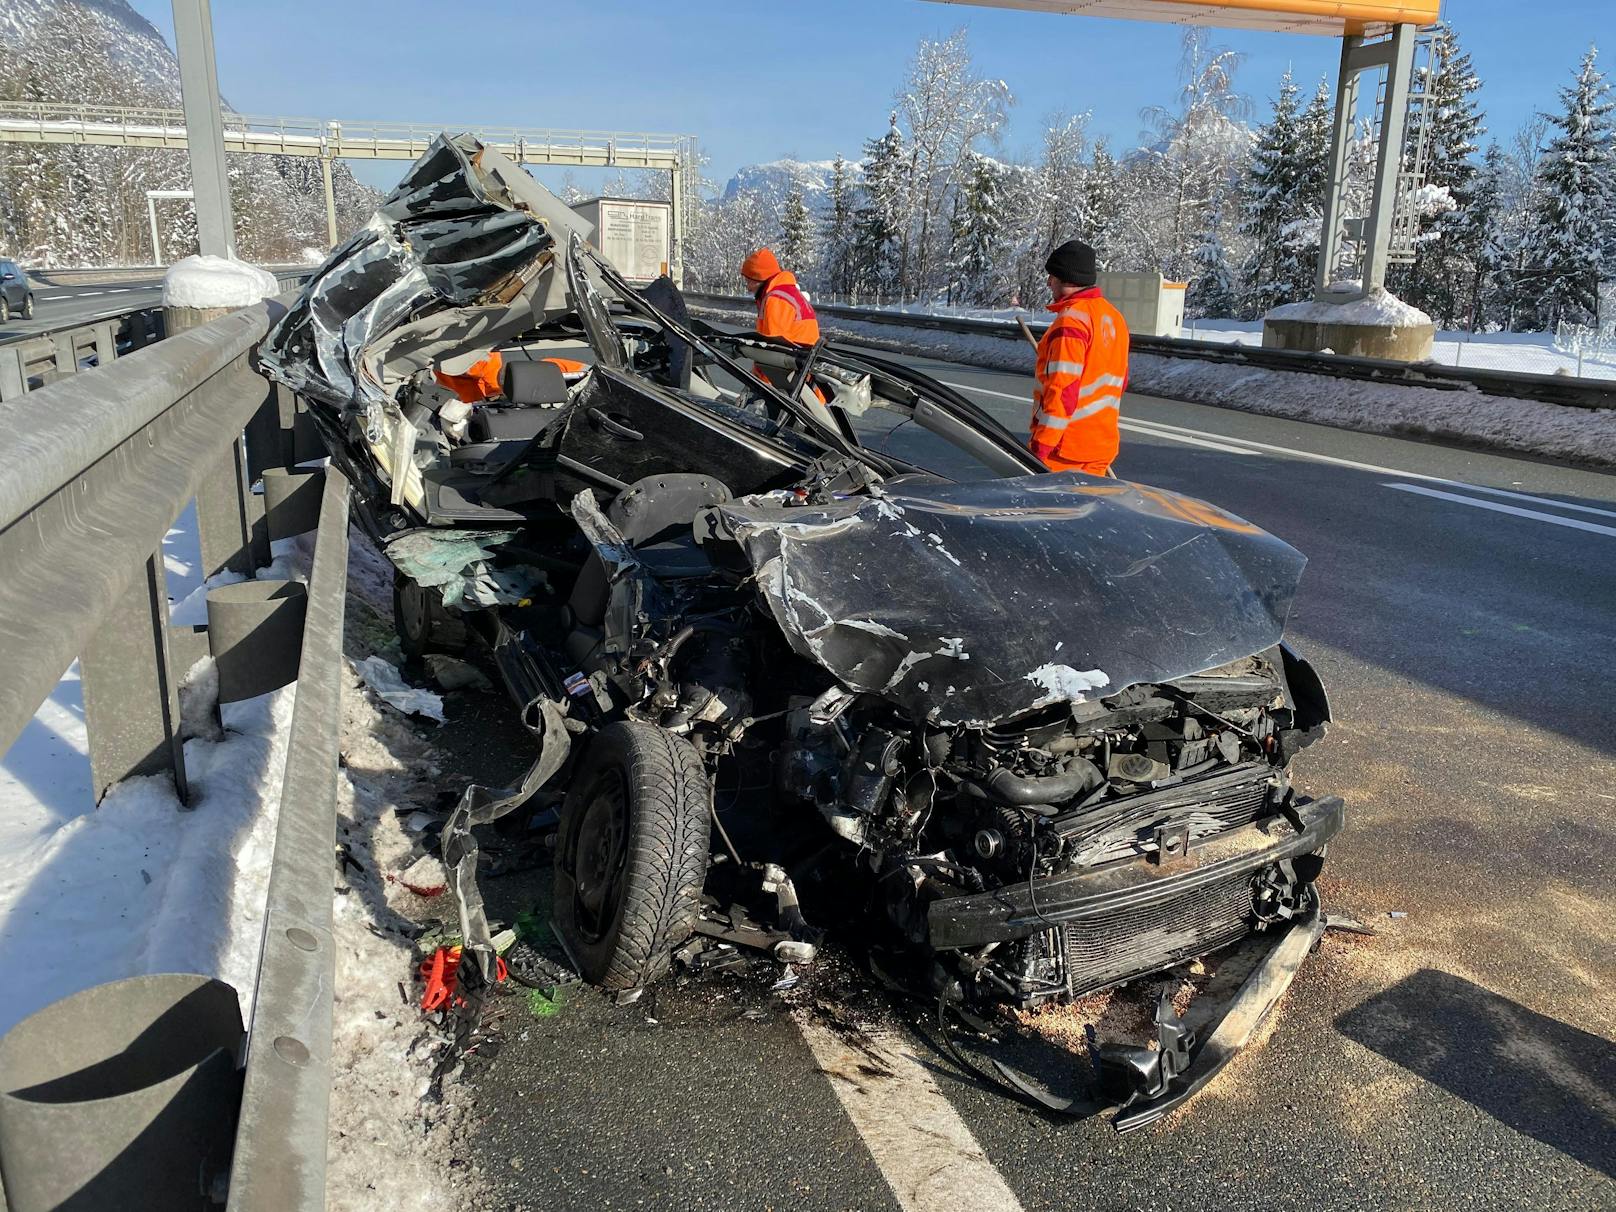 Schwerer Unfall am Dienstag auf der A12! Ein 25-Jähriger raste mit seinem Auto in einen Lkw, dabei wurde der Pkw regelrecht zerfetzt. 